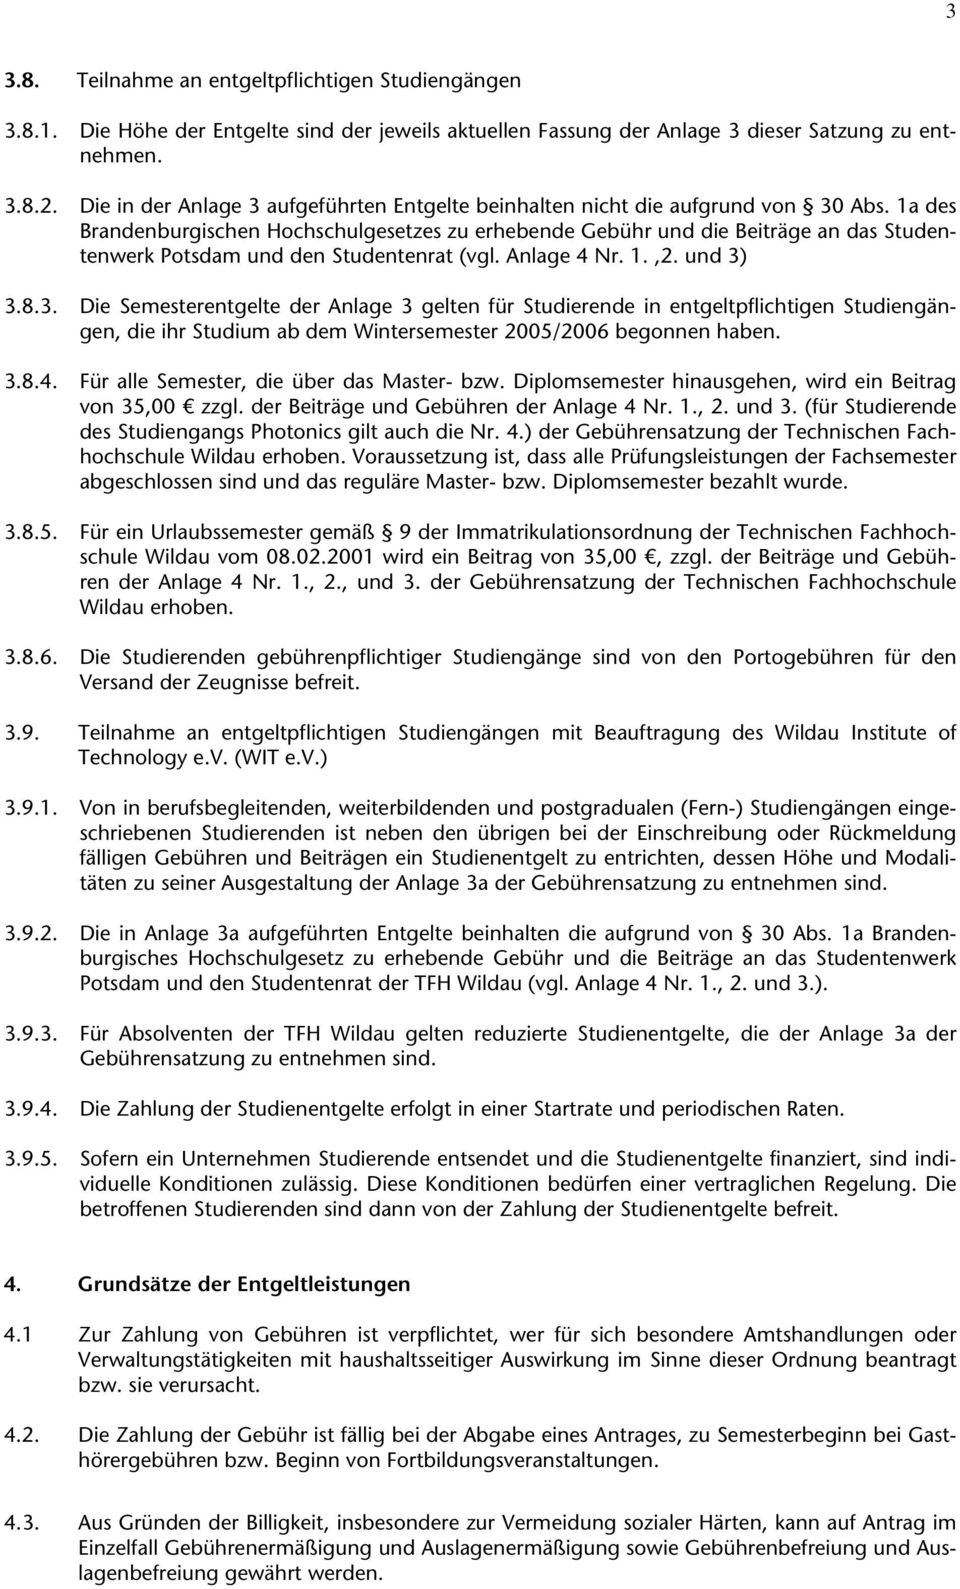 1a des Brandenburgischen Hochschulgesetzes zu erhebende Gebühr und die Beiträge an das Studentenwerk Potsdam und den Studentenrat (vgl. Anlage 4 Nr. 1.,2. und 3)